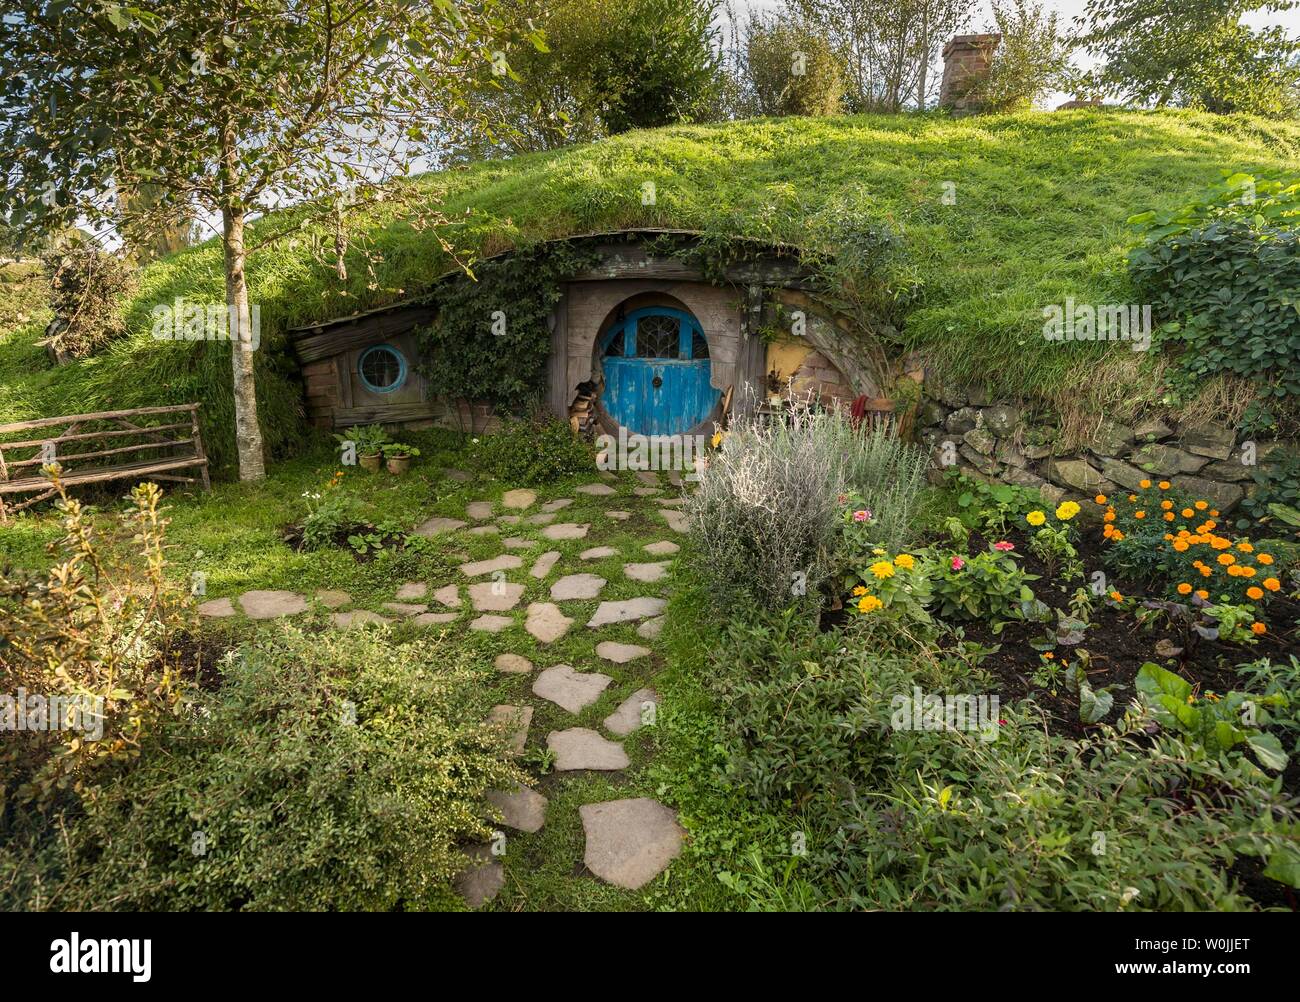 Hobbit cueva con puerta azul, Hobbiton en el shire, ubicación de El Señor de los anillos y el Hobbit Matamata, Waikato, Isla del Norte, Nueva Zelanda Foto de stock